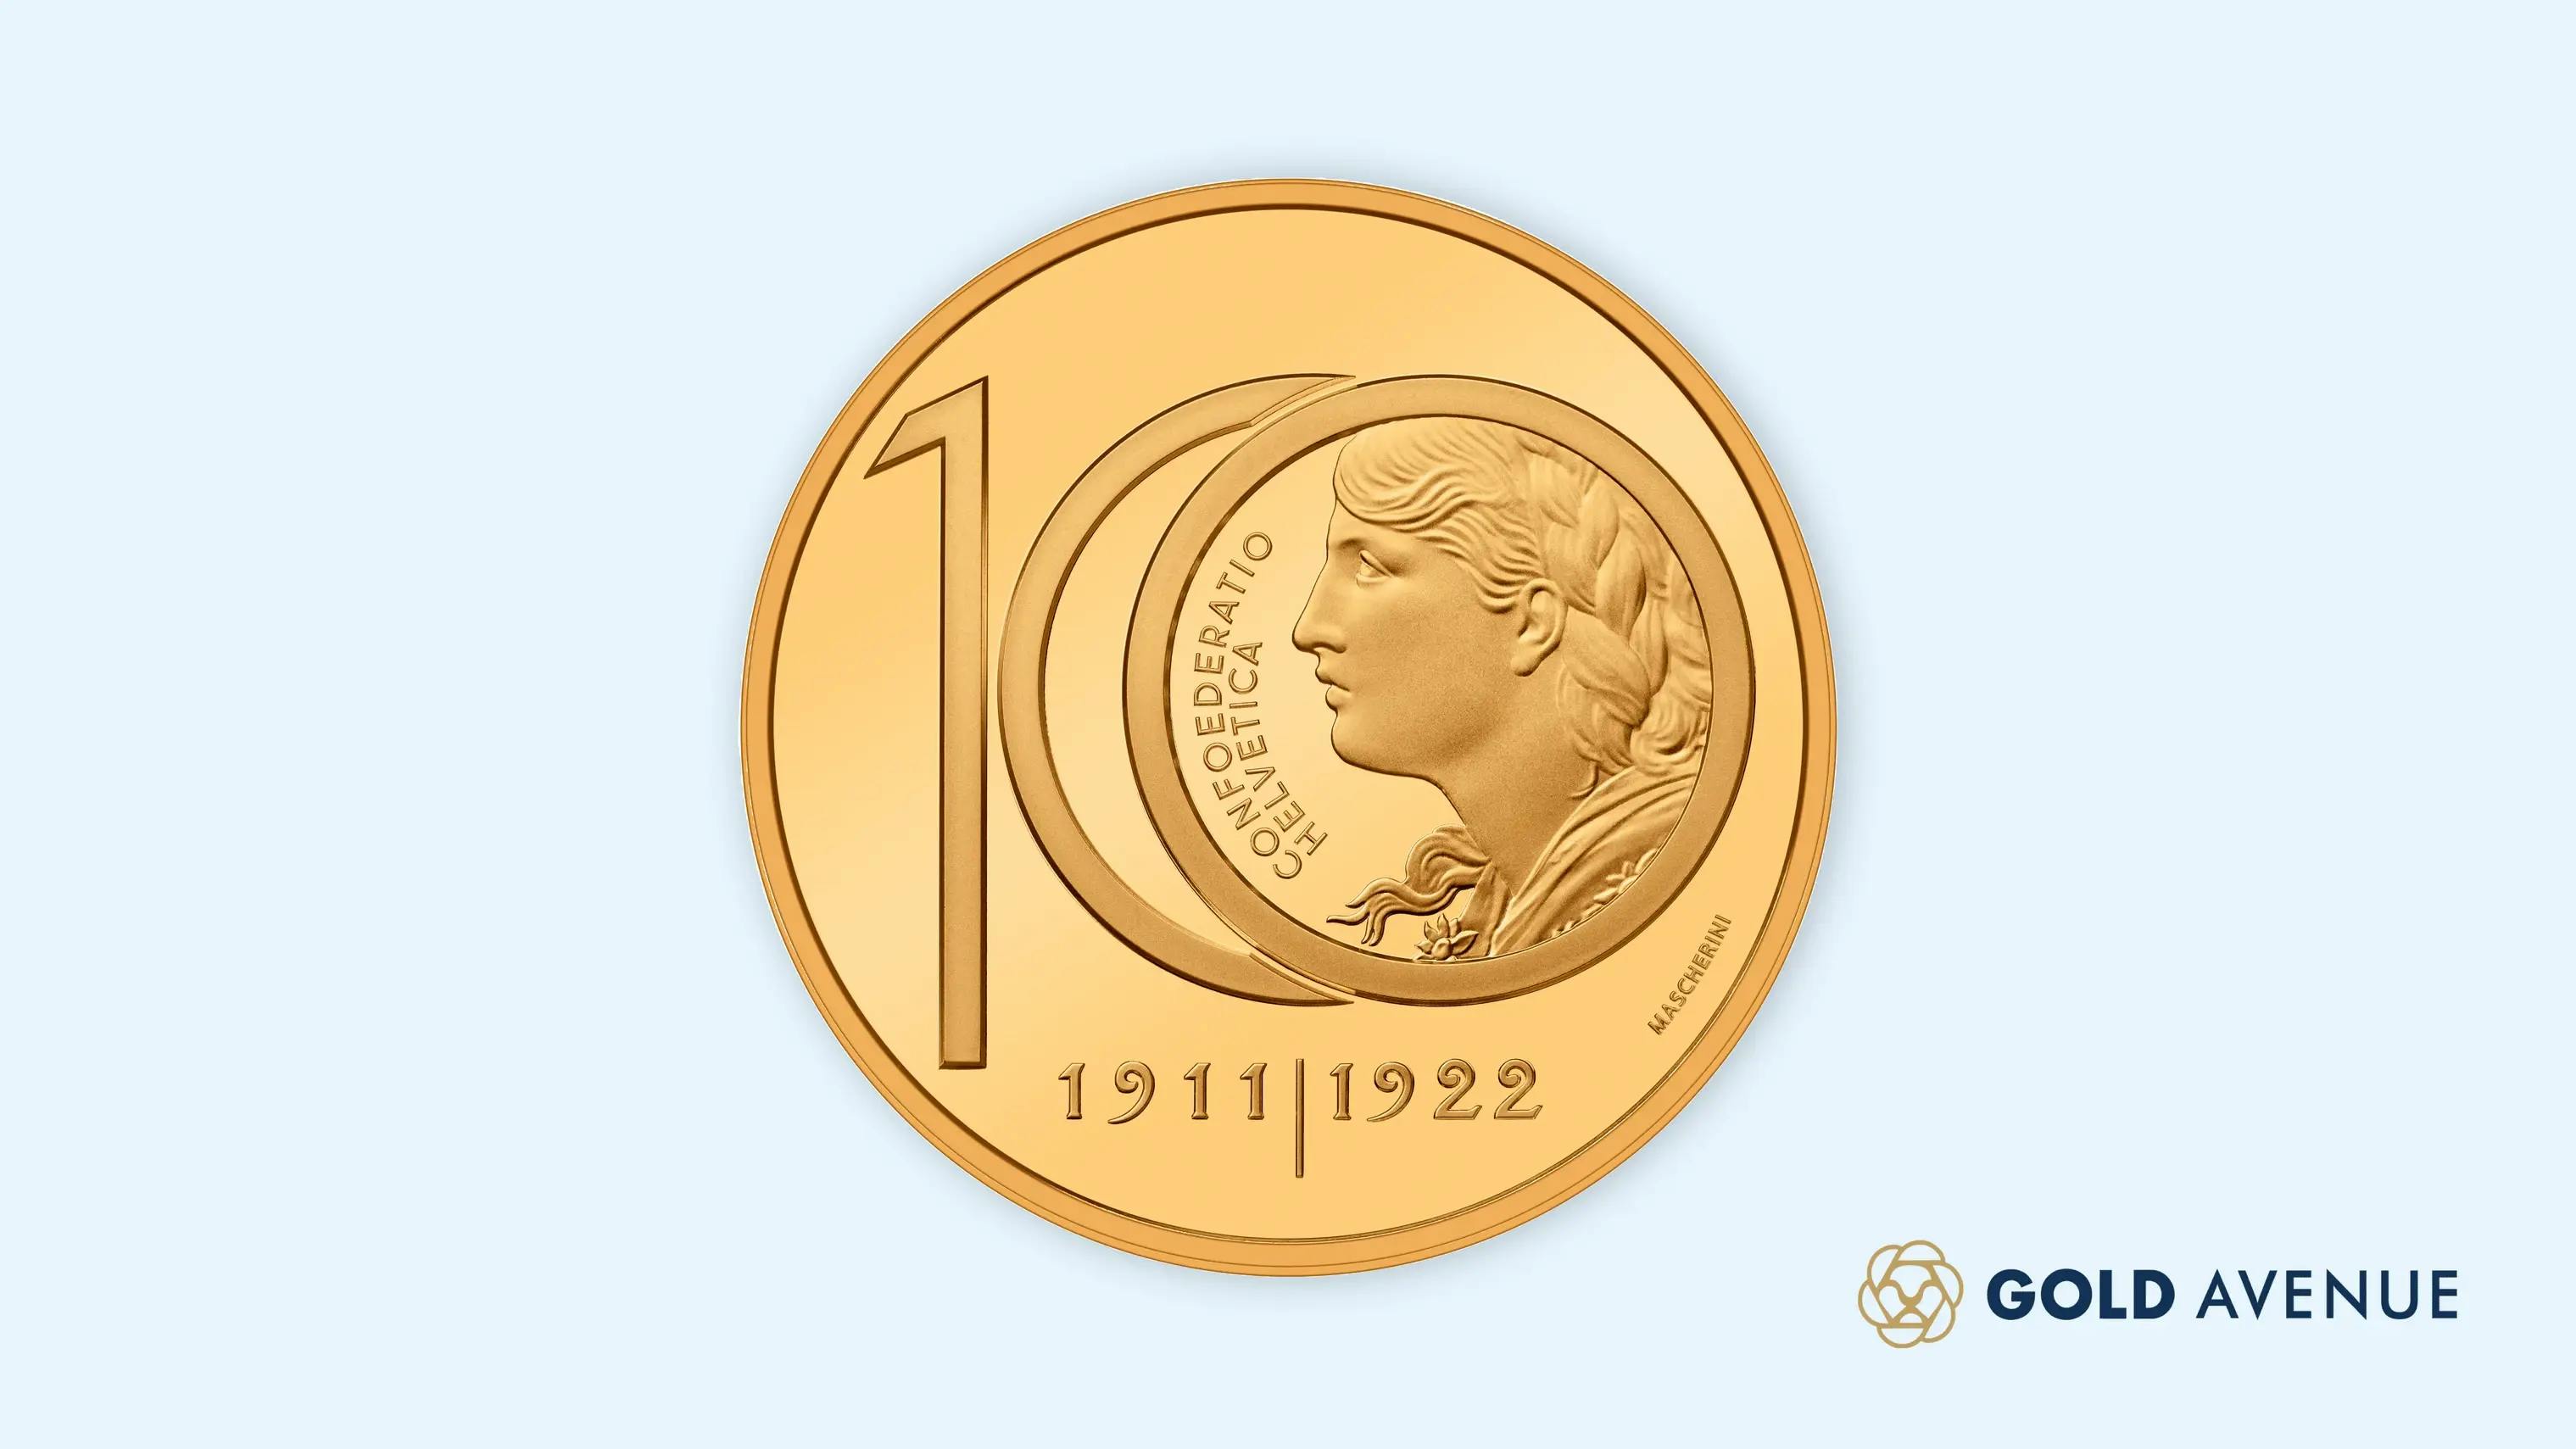 Swissmint emette una nuova moneta Vreneli in edizione limitata per celebrare l’ultimo conio della famosa moneta Vreneli da 10 franchi svizzeri nel 1922.